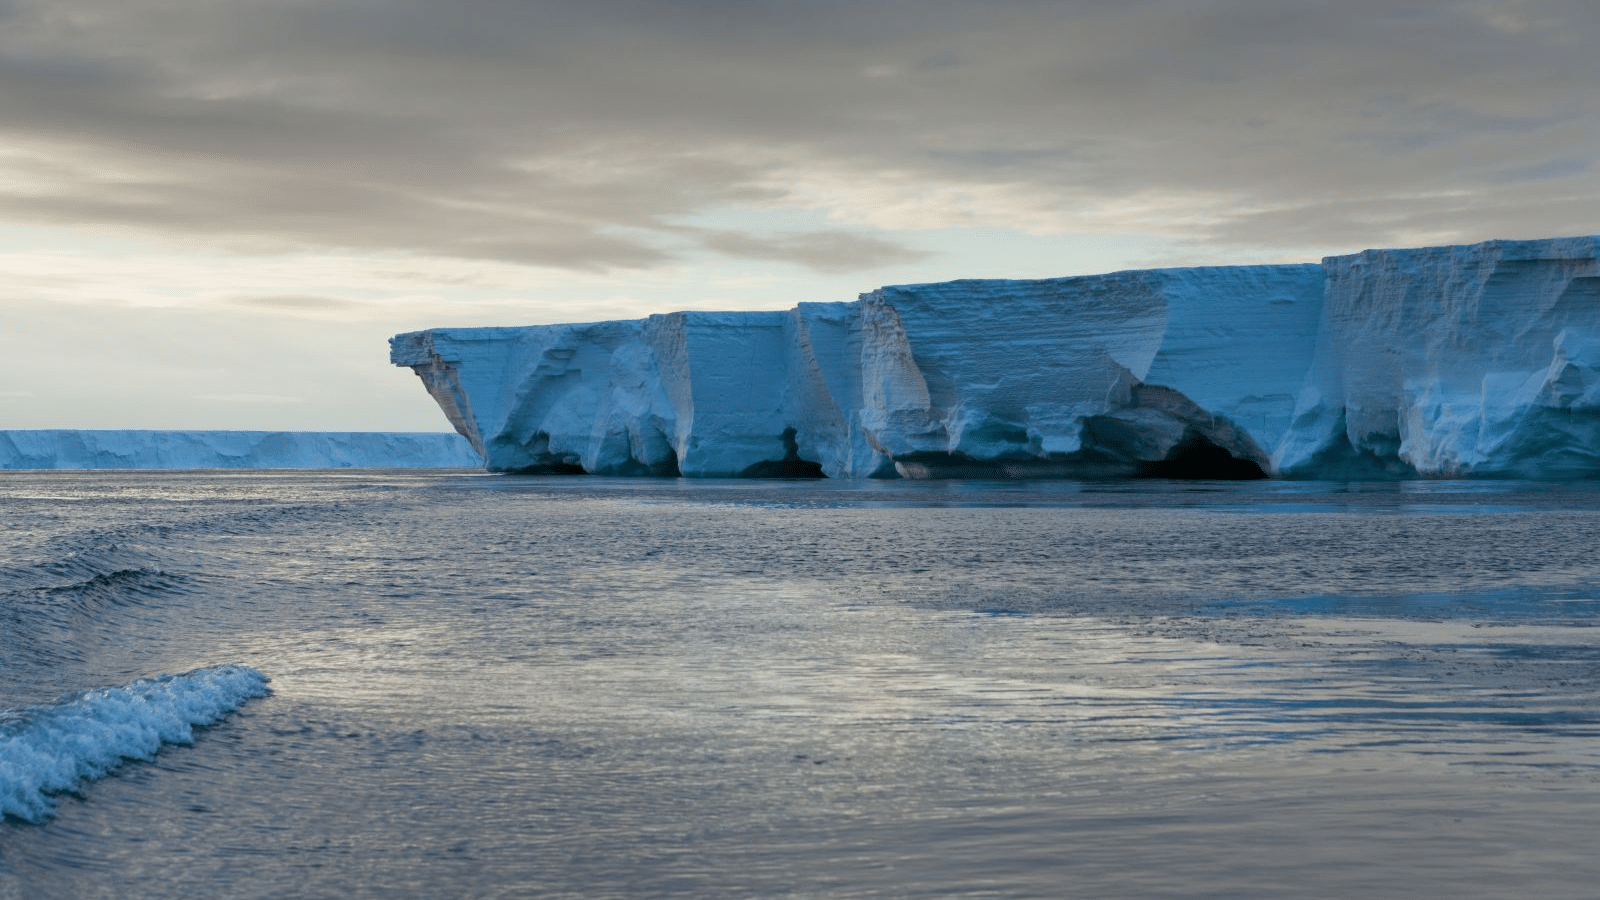 Singing ice recorded in Antarctica and Arctic region